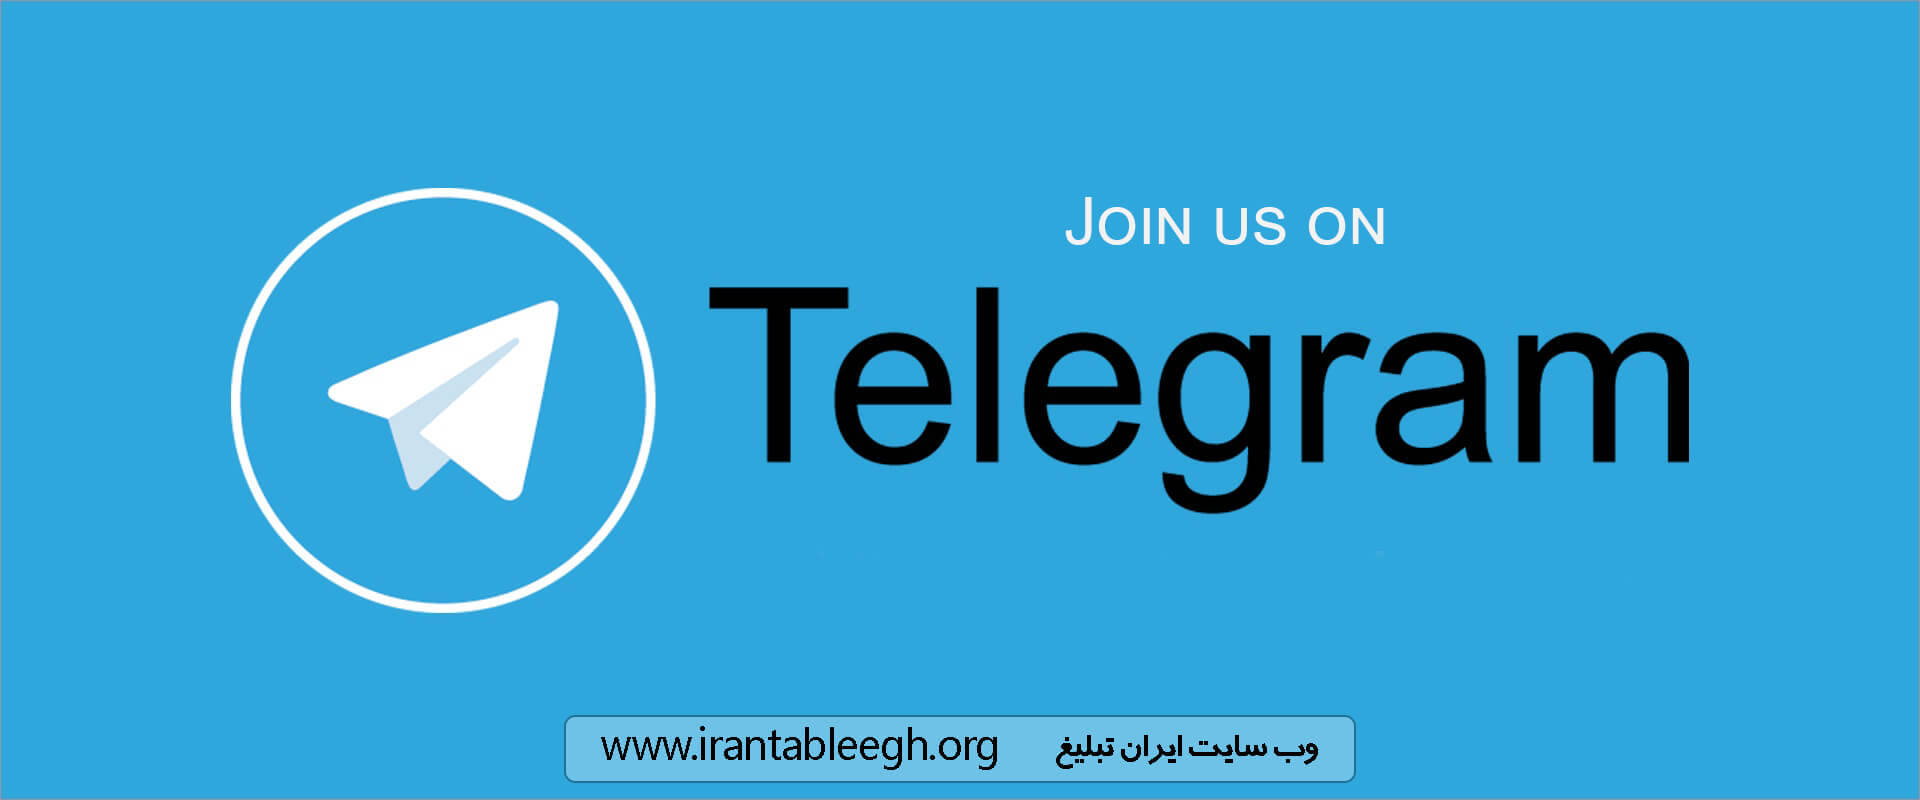 مدیریت کانال تلگرام,تبلیغات تلگرامی,ادمین کانال تلگرام,افزایش کیفیت کانال تلگرام,کانال تلگرامی جذاب,ویژگی های یک کانال تلگرامی,افزایش اعضای کانال,افزایش اعضای کانال تلگرام